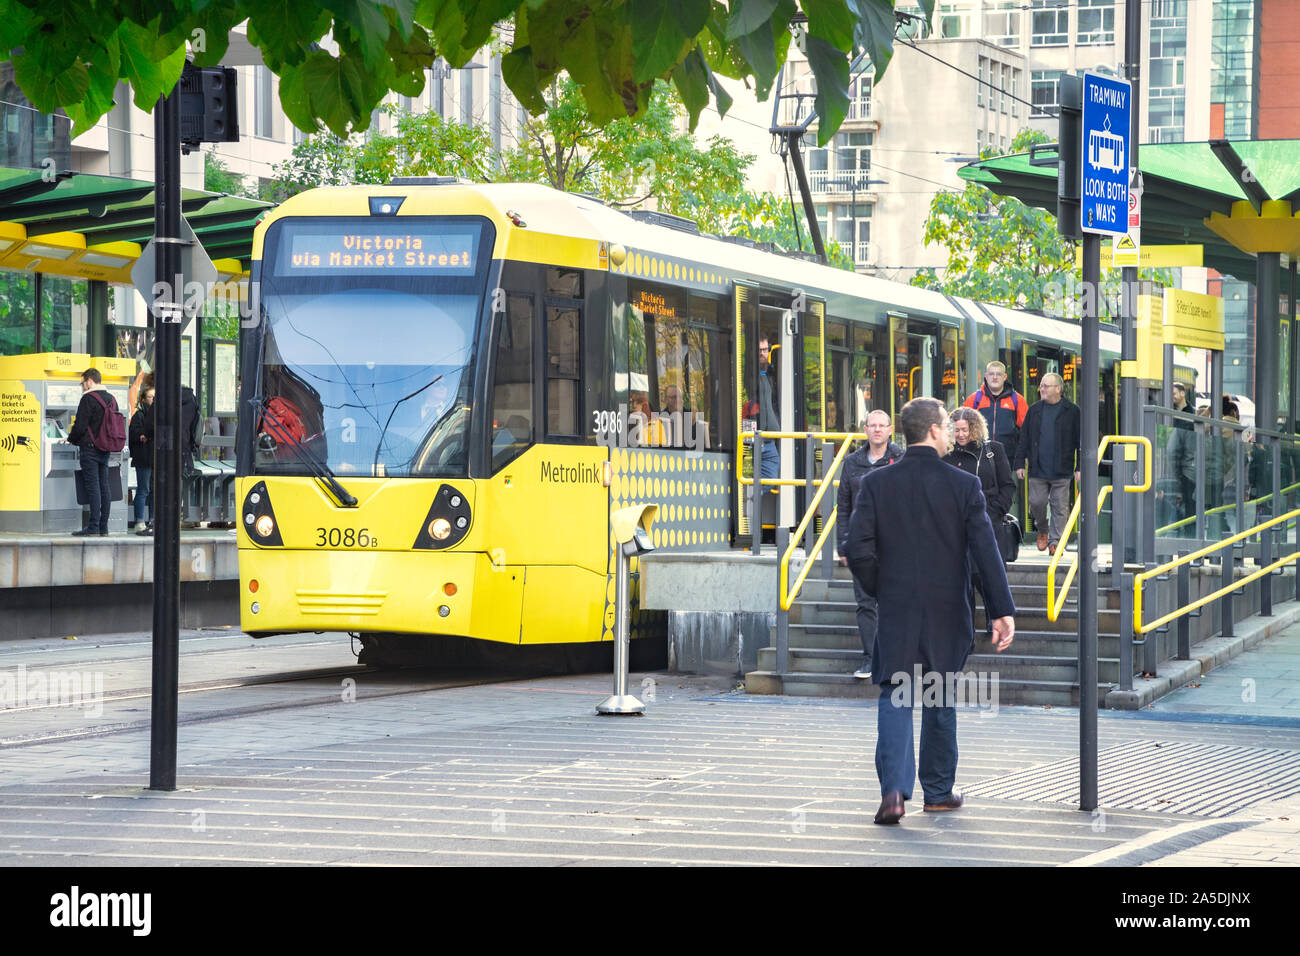 2 novembre 2018 : Manchester, UK - tramway Metrolink au tram dans la place Saint Pierre dans la CDB, les gens monter et descendre. Banque D'Images